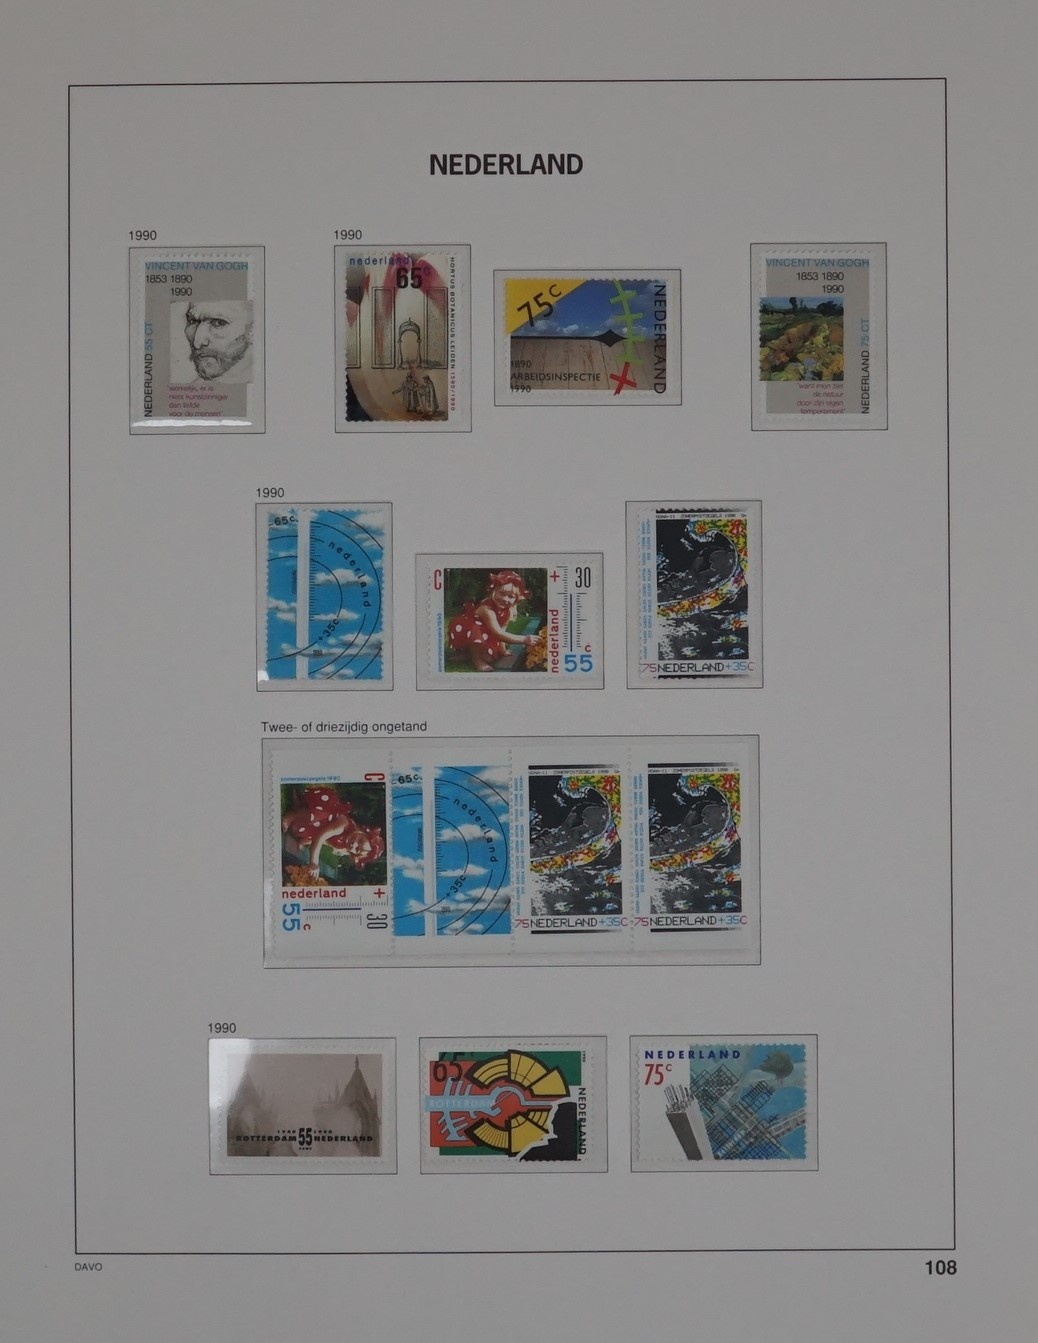 Davo de luxe album, Nederland deel IV - Stamps 4 Everyone